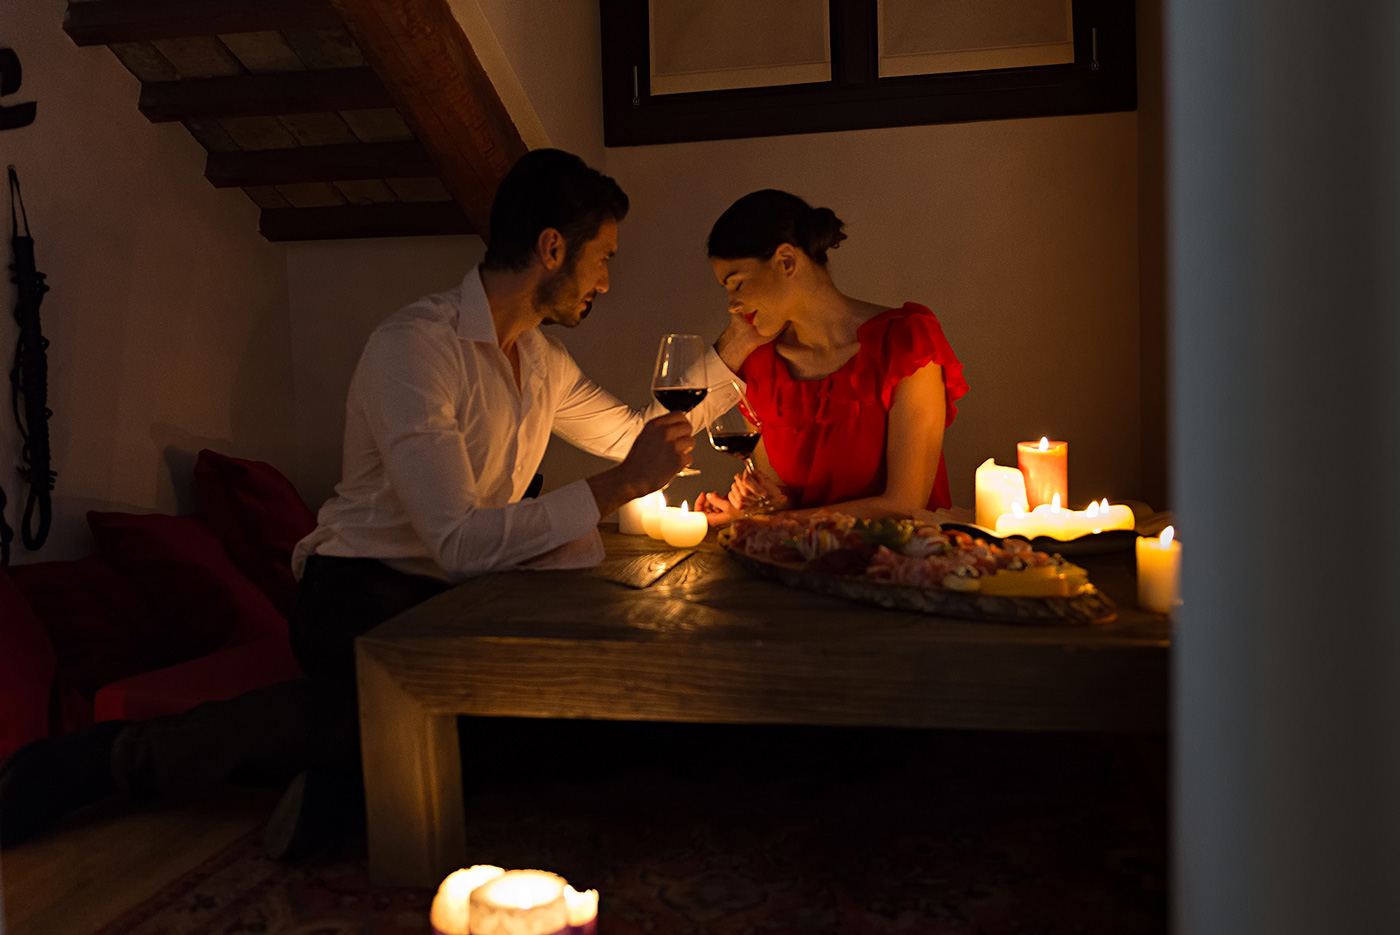 Новогодний секс мужа и жены при свечах в ванной